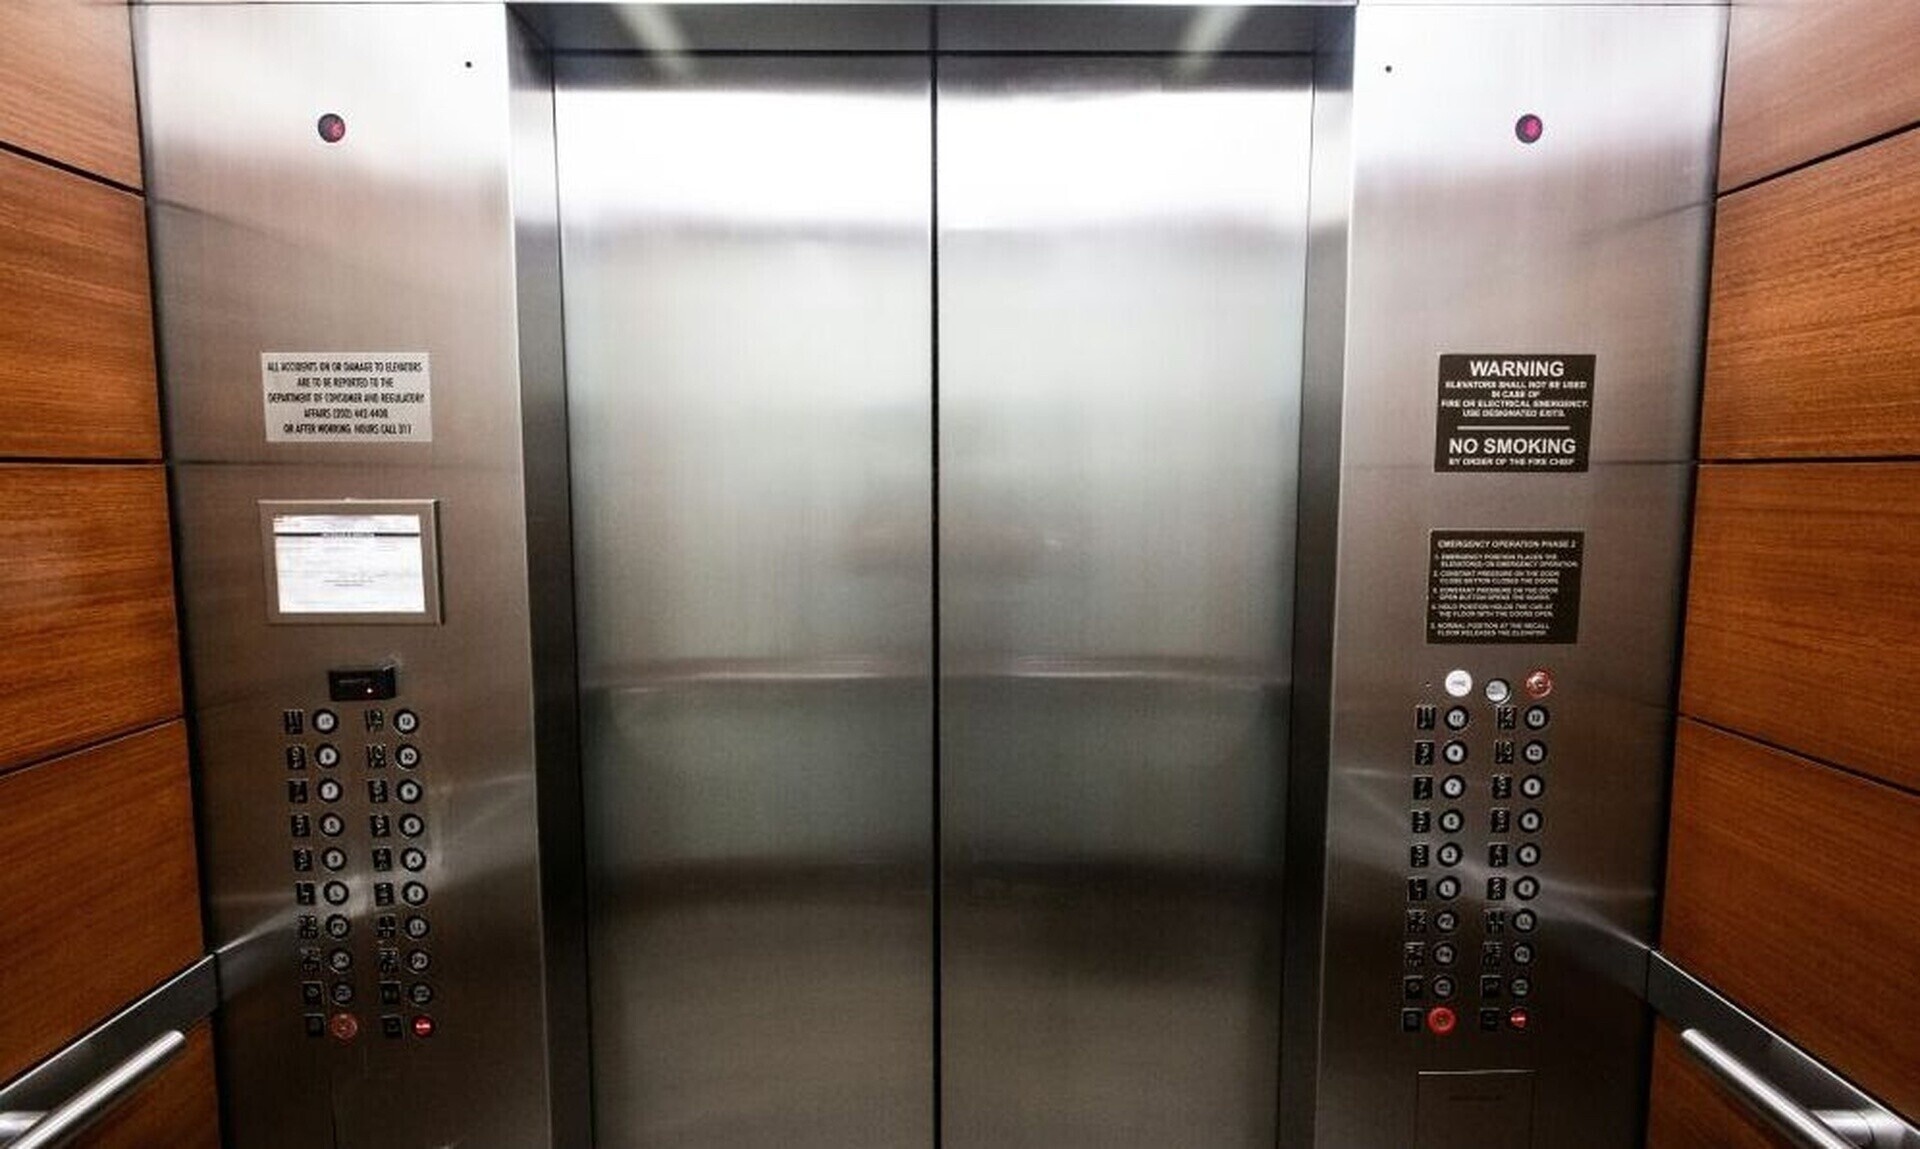 Σοκ με τα ασανσέρ στις πολυκατοικίες - Τι λέει νέος Νόμος